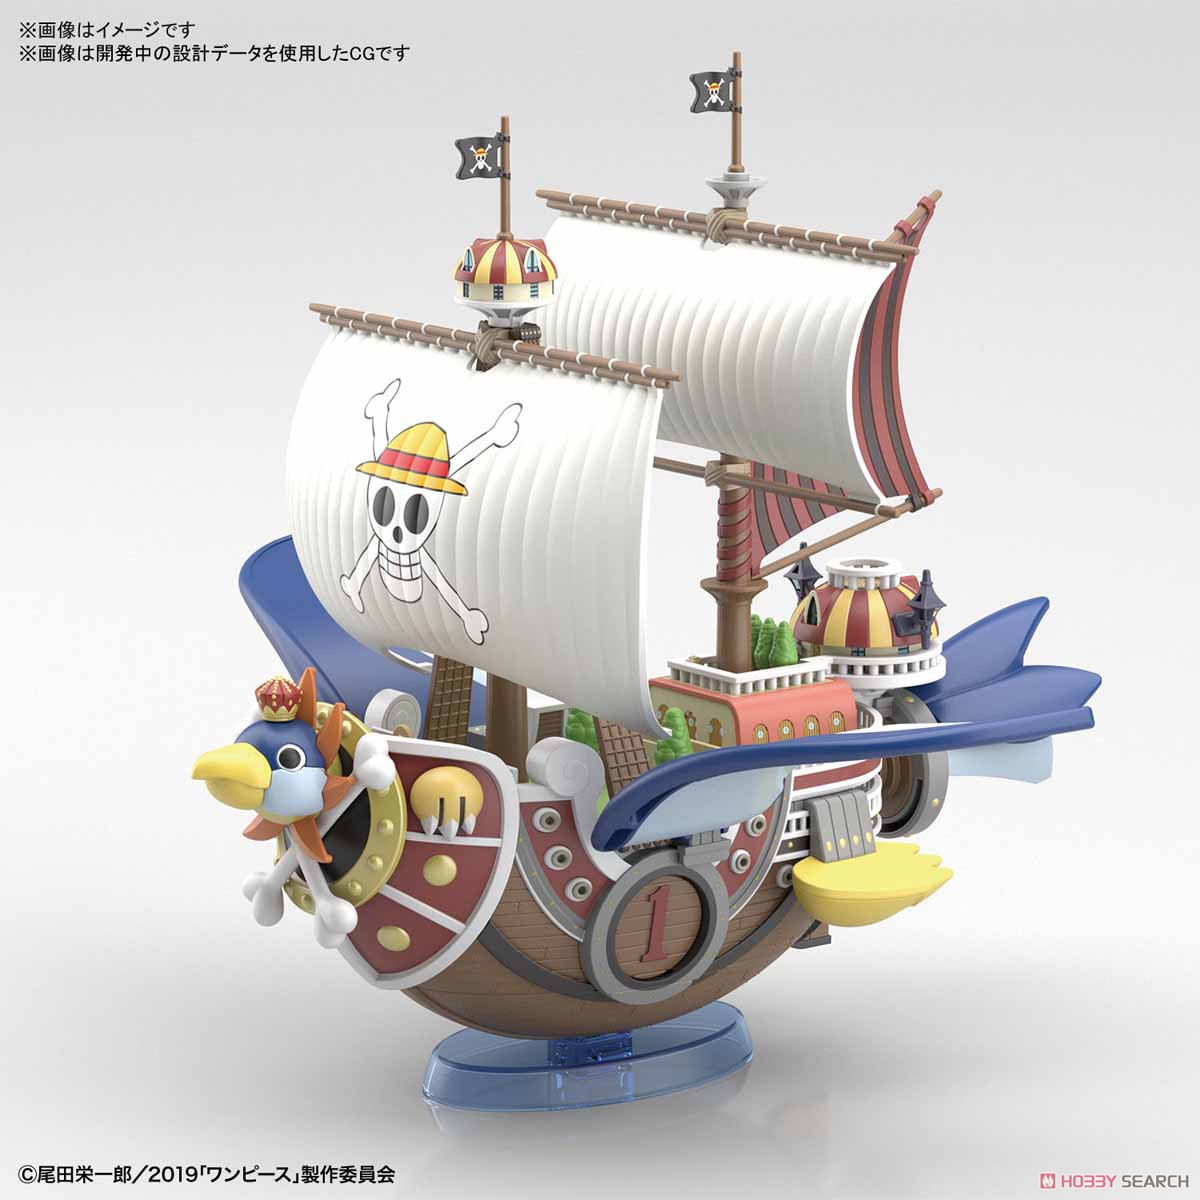 ワンピース 偉大なる船コレクション サウザンド サニー号 フライングモデル プラモデル Bandai Spirits より19年7月発売予定 人気フィギュア安値で予約 トイゲット Blog